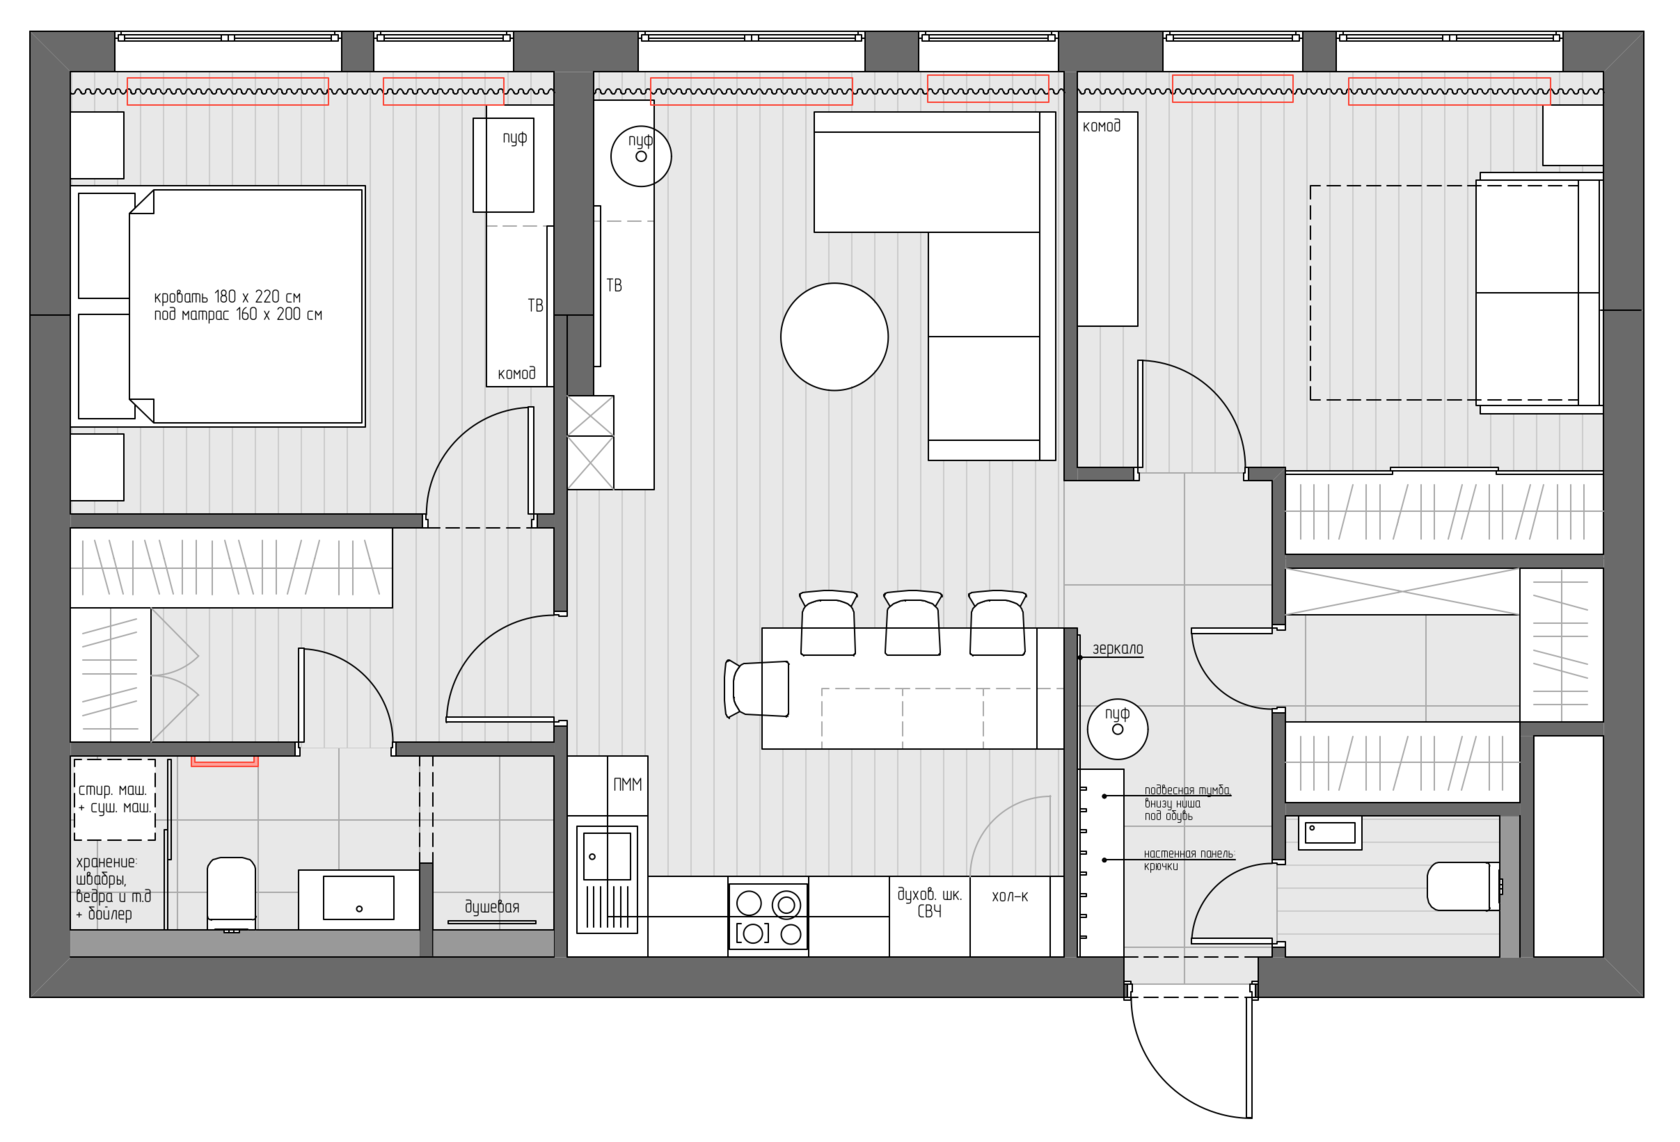 Дизайн квартиры 60 кв. м: реальные фото-примеры оформления квартиры с 2 и 3 комнатами в современном стиле, советы по выбору цветовой гаммы